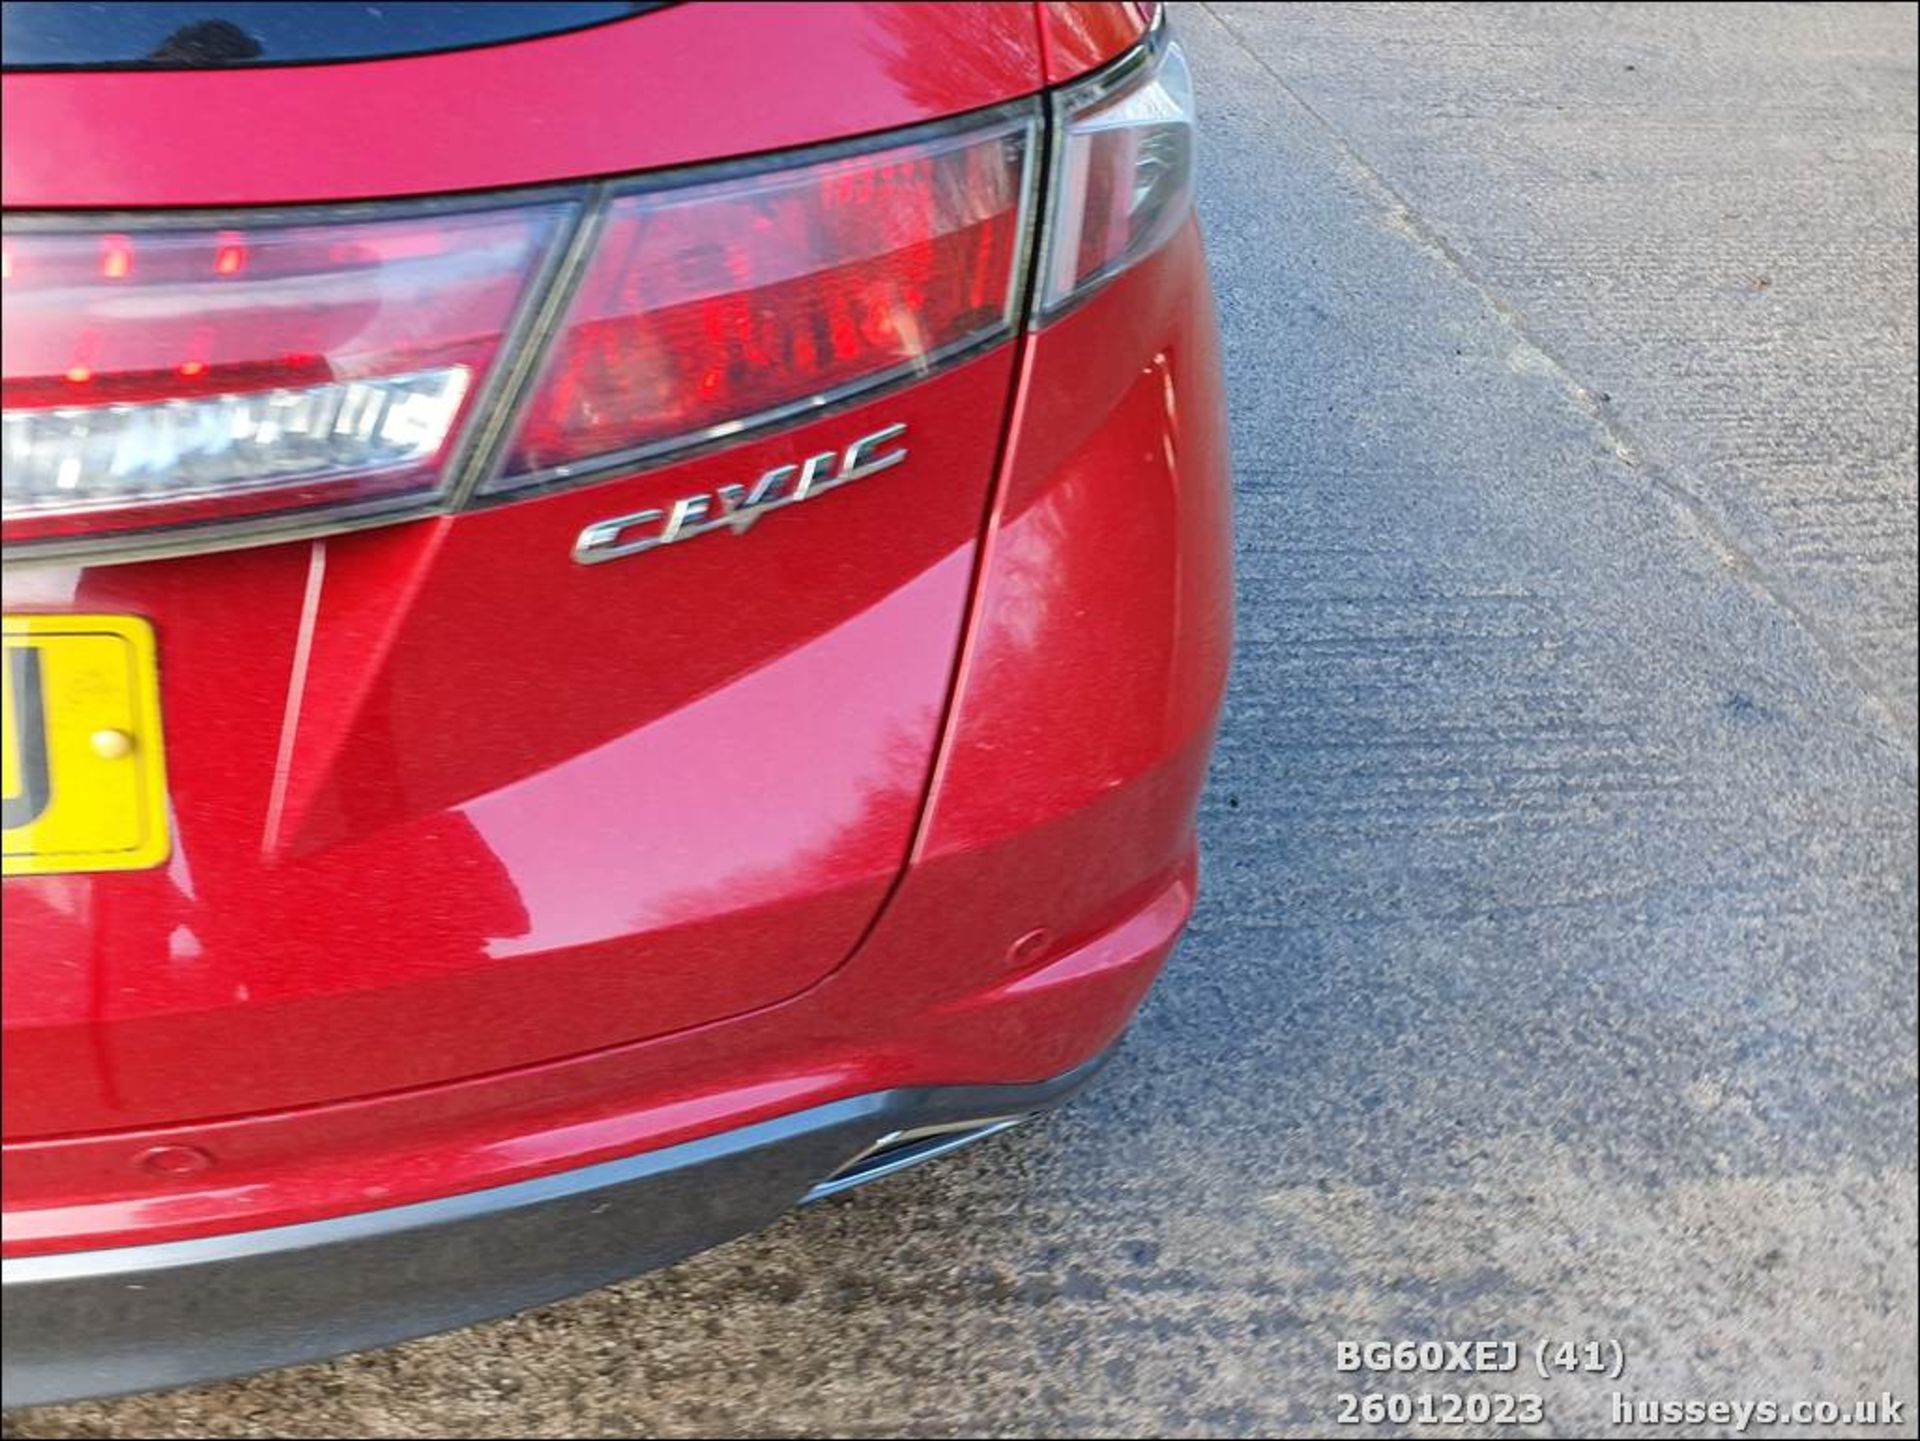 10/60 HONDA CIVIC ES I-CTDI - 2204cc 5dr Hatchback (Red, 144k) - Image 41 of 45